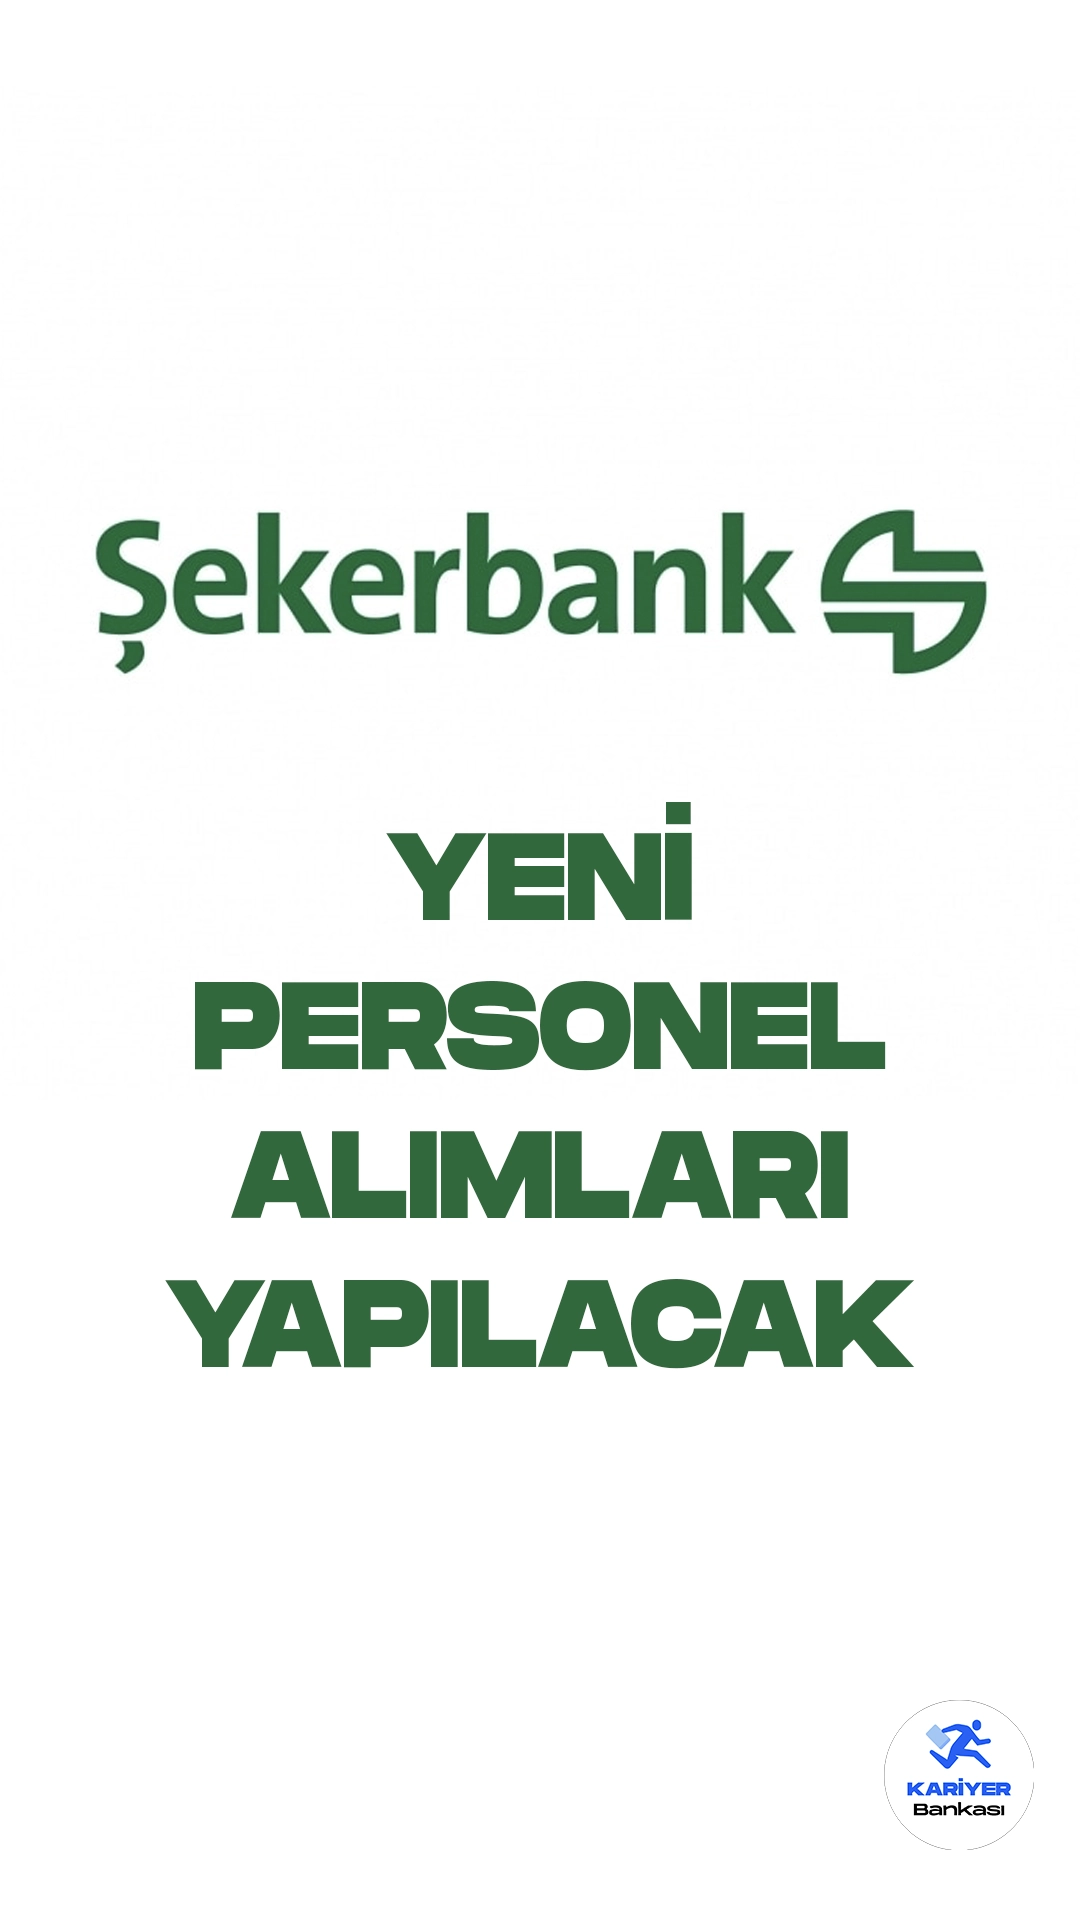 Şekerbank personel alımı duyuruları yayımlandı. Şekerbank farklı unvanda personel alımları yapacak. İstanbul, İzmir, Bursa, Kocaeli, Sakarya illerinde olmak üzere yapılacak olan personel alımları başvuruları online olarak gerçekleştiriliyor.